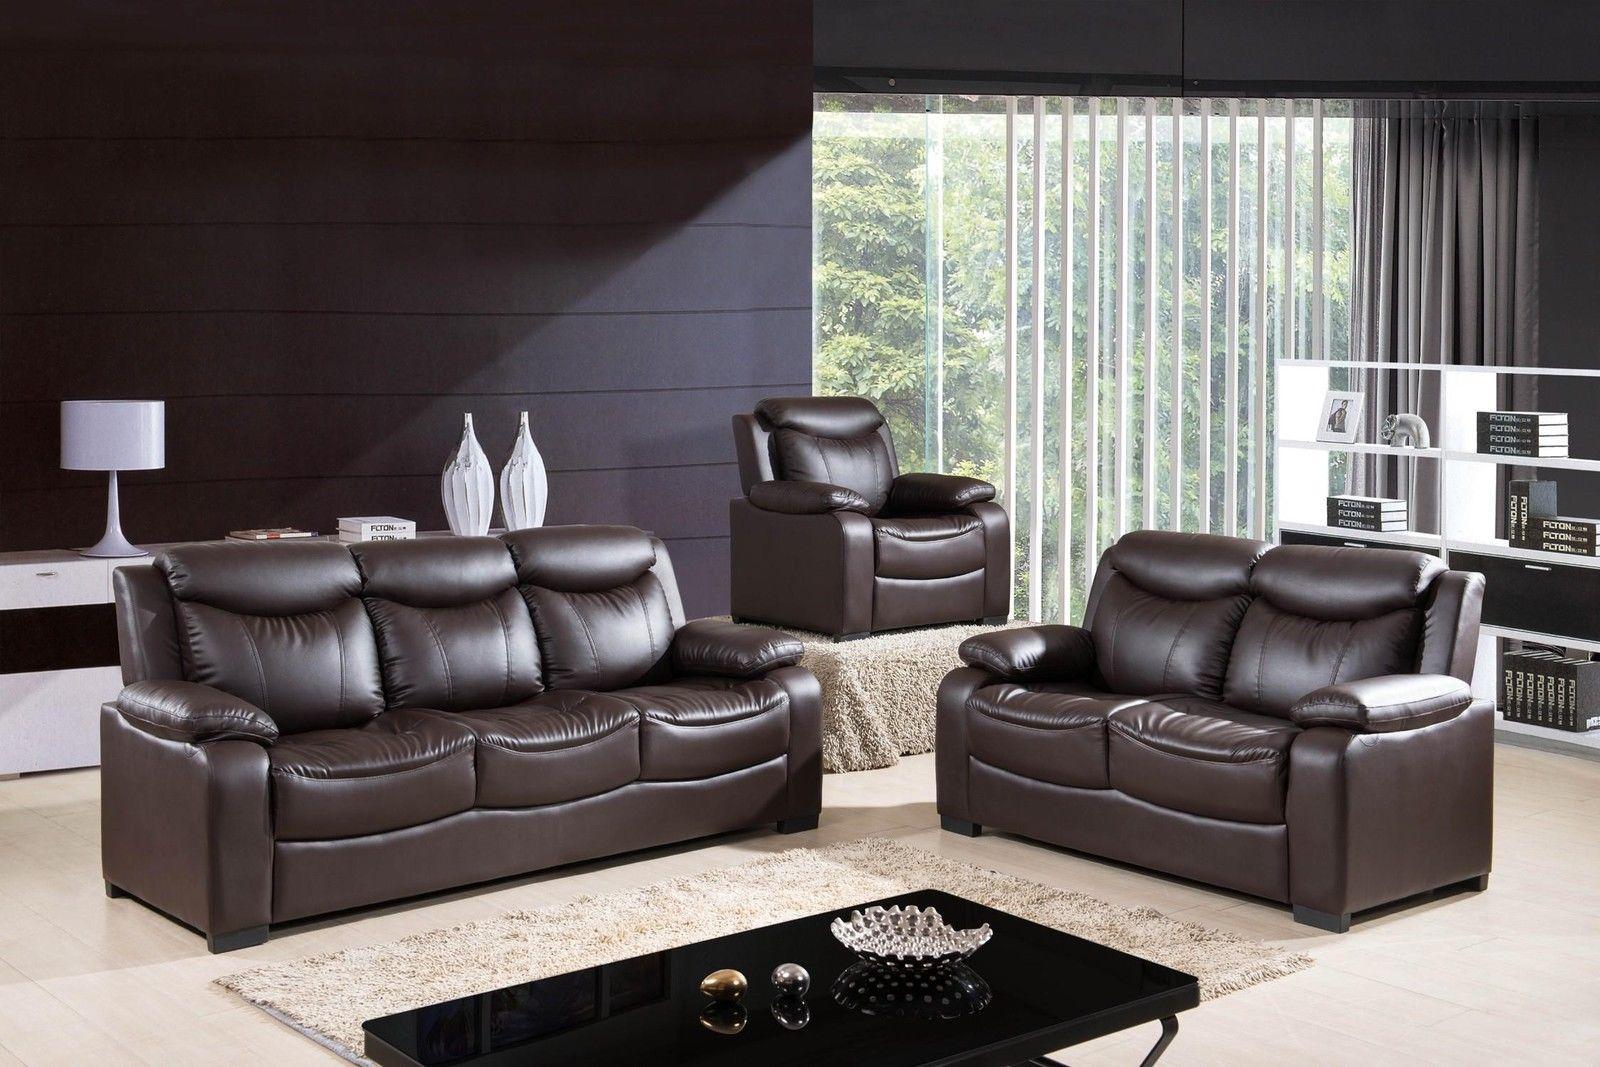 

    
McFerran SF5506 Contemporary Chocolate PU Living Room Sofa Set 3Pcs
